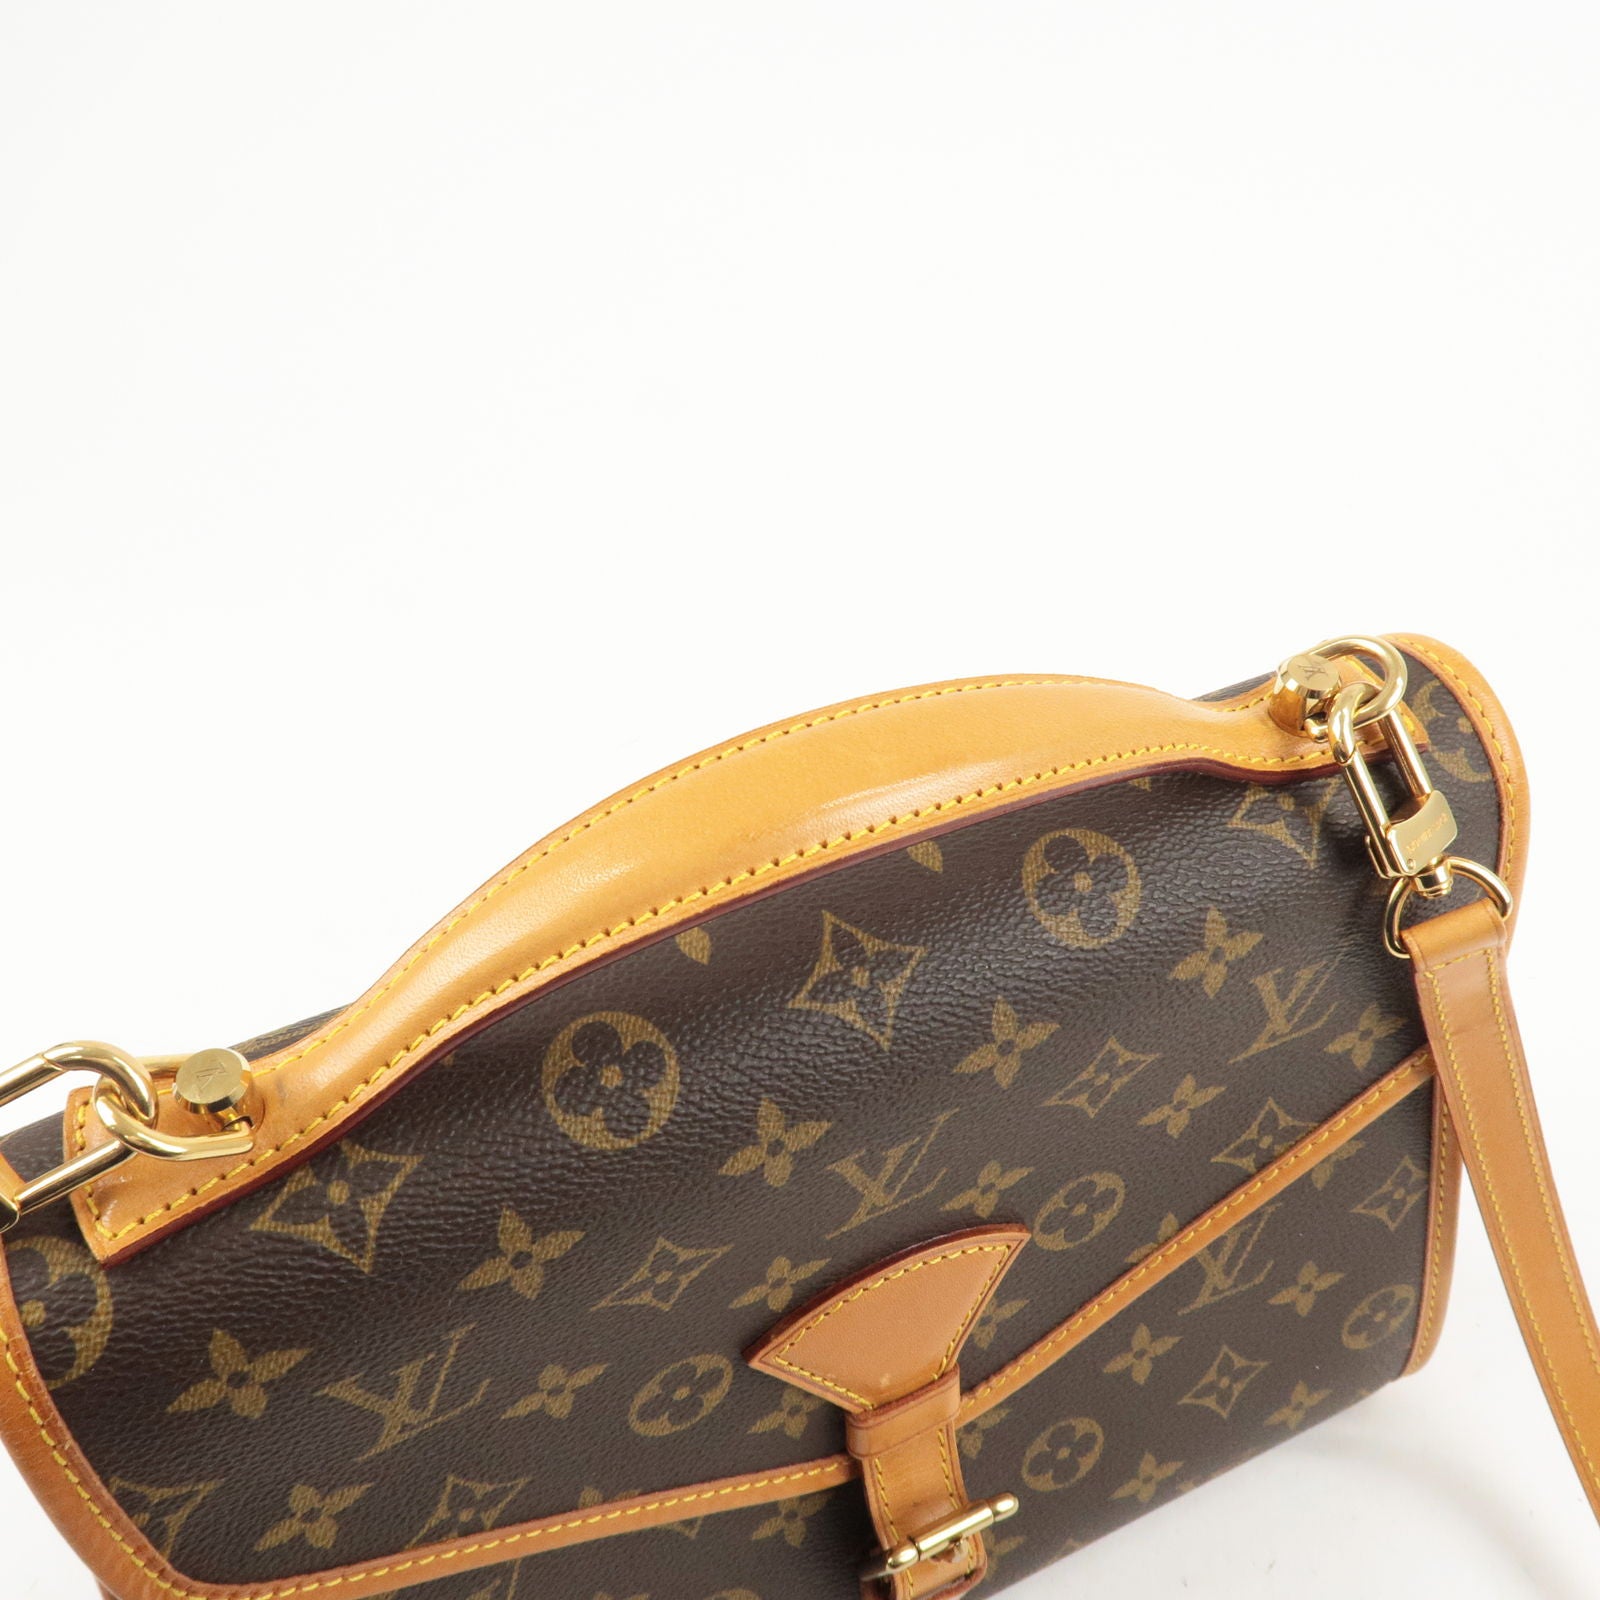 120cm Chain Strap for Handbags Louis Vuitton Felicie 